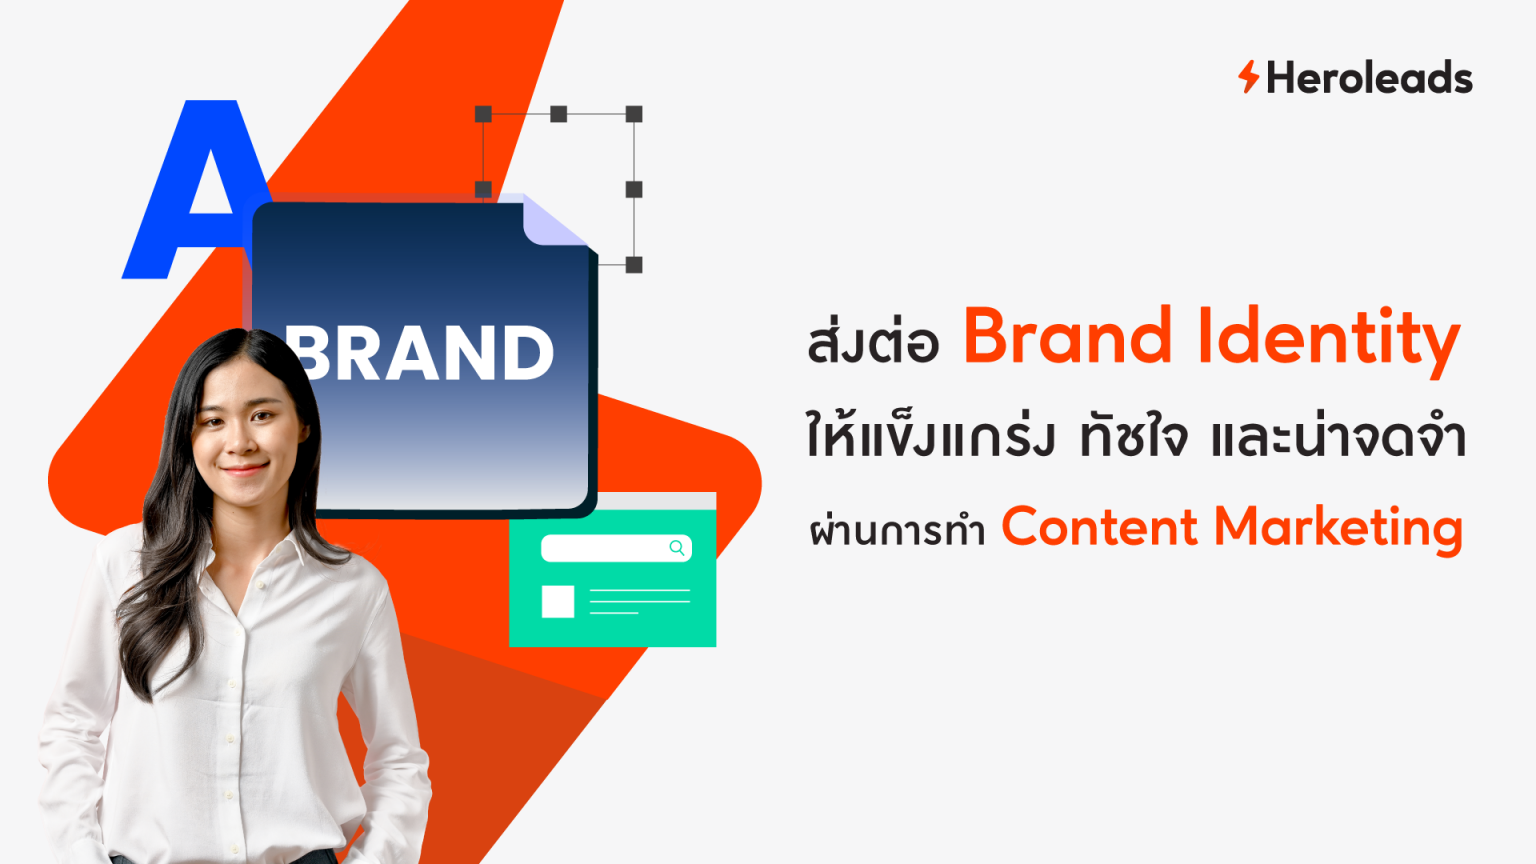 ส่งต่อ Brand Identity ผ่าน Content Marketing